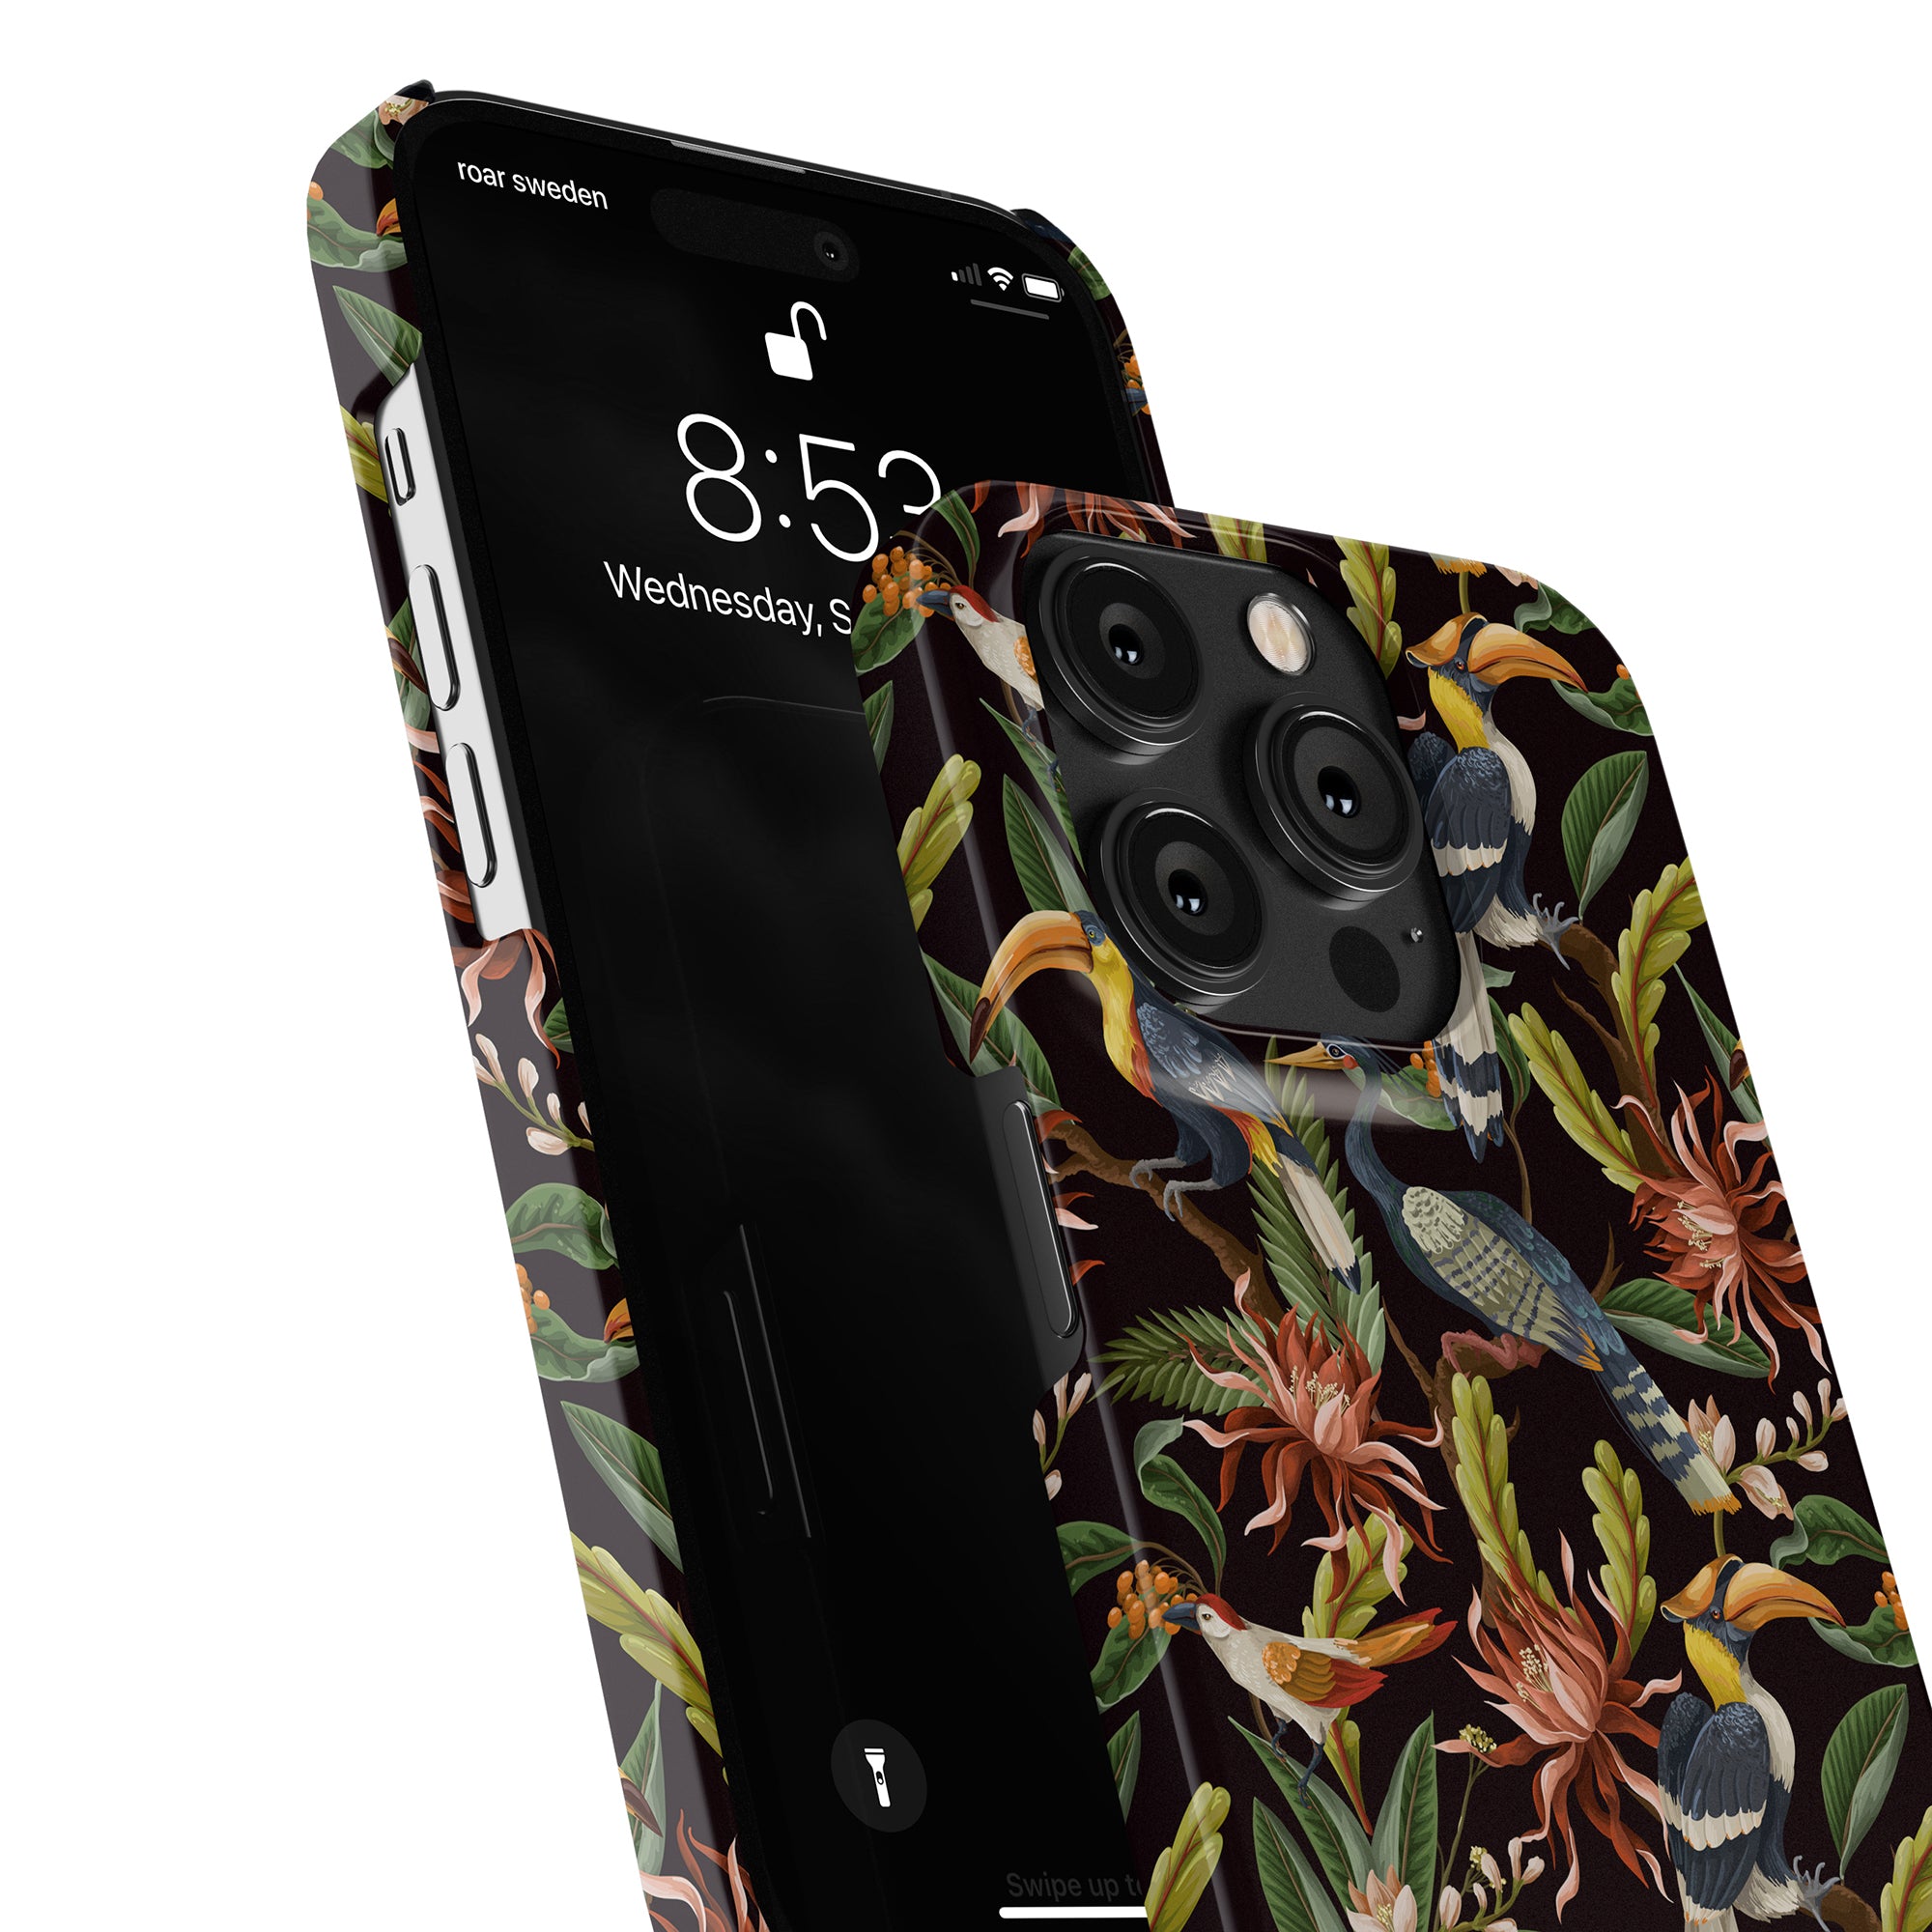 Produktbeskrivning: Förbättra stilen på din iPhone 11 med Toucan - Slim fodral. Den livfulla designen med tropiskt mönster ger omedelbart en touch av exotisk stil till din enhet och visar upp din unika personlighet. Skyddar